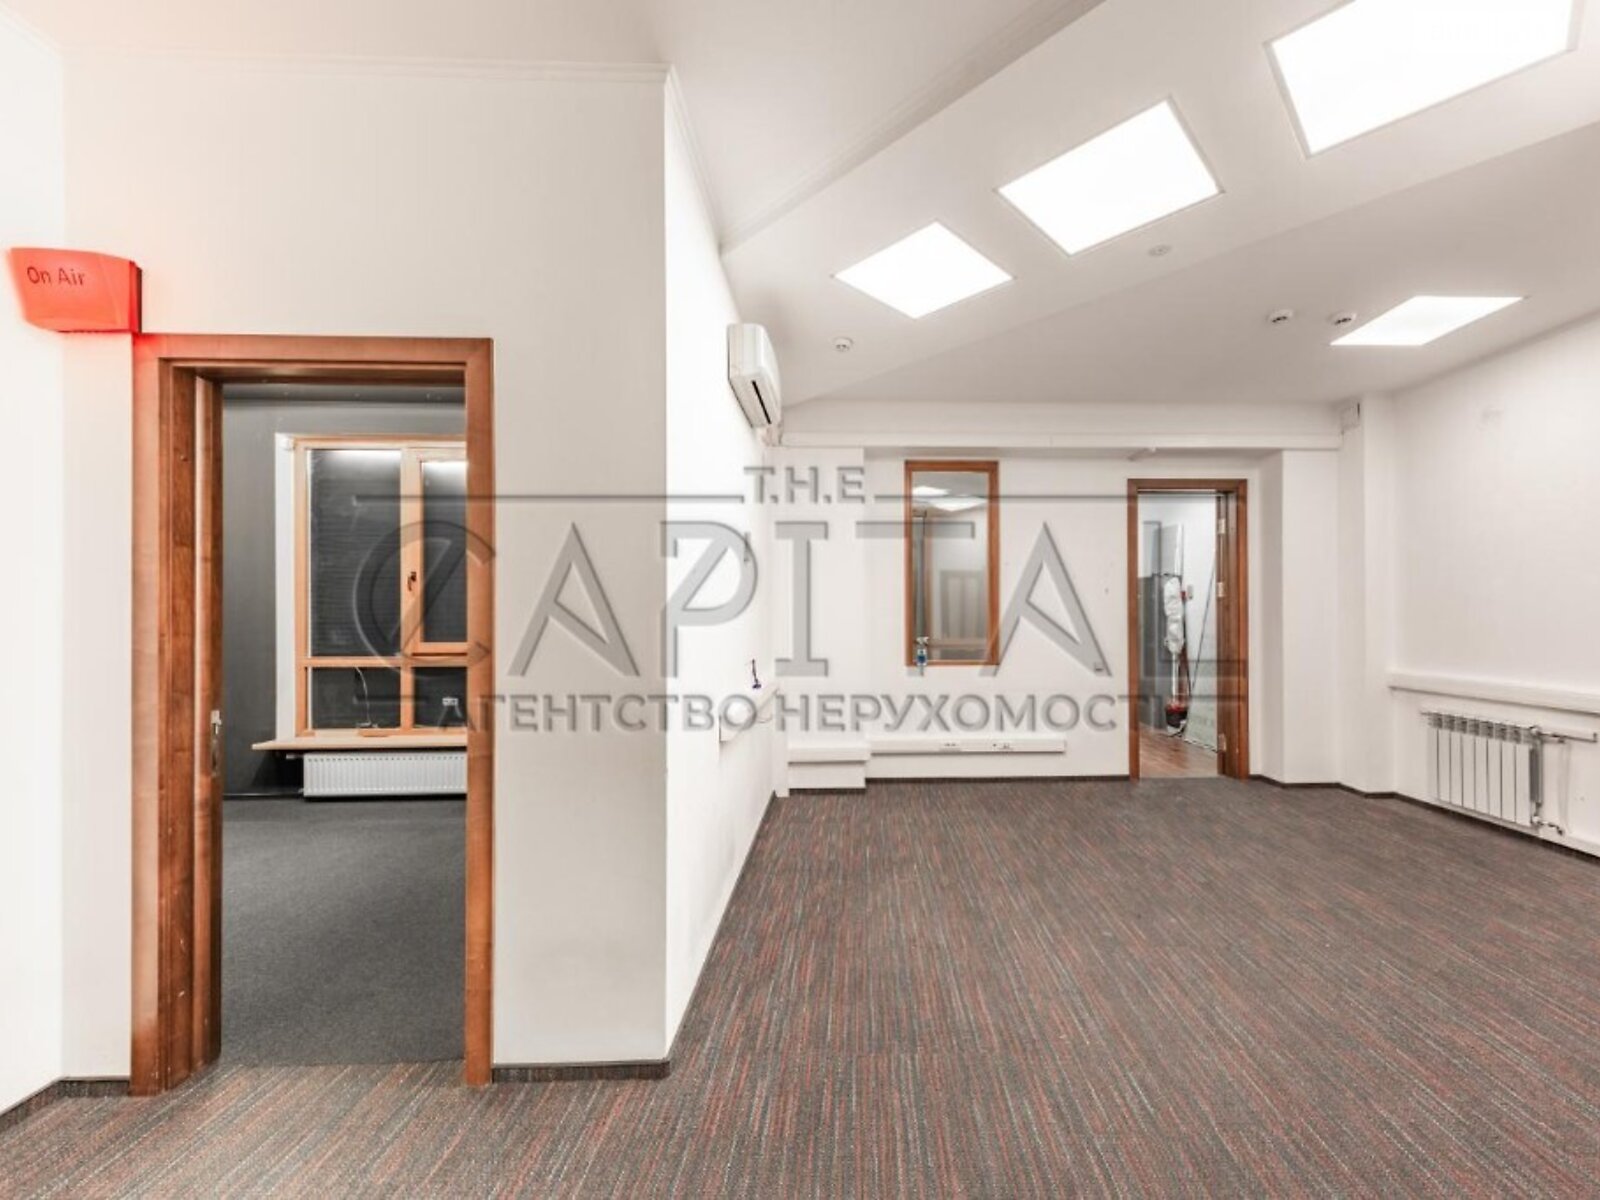 Аренда офисного помещения в Киеве, Бутышев (Иванова) переулок 13, помещений - 4, этаж - 1 фото 1